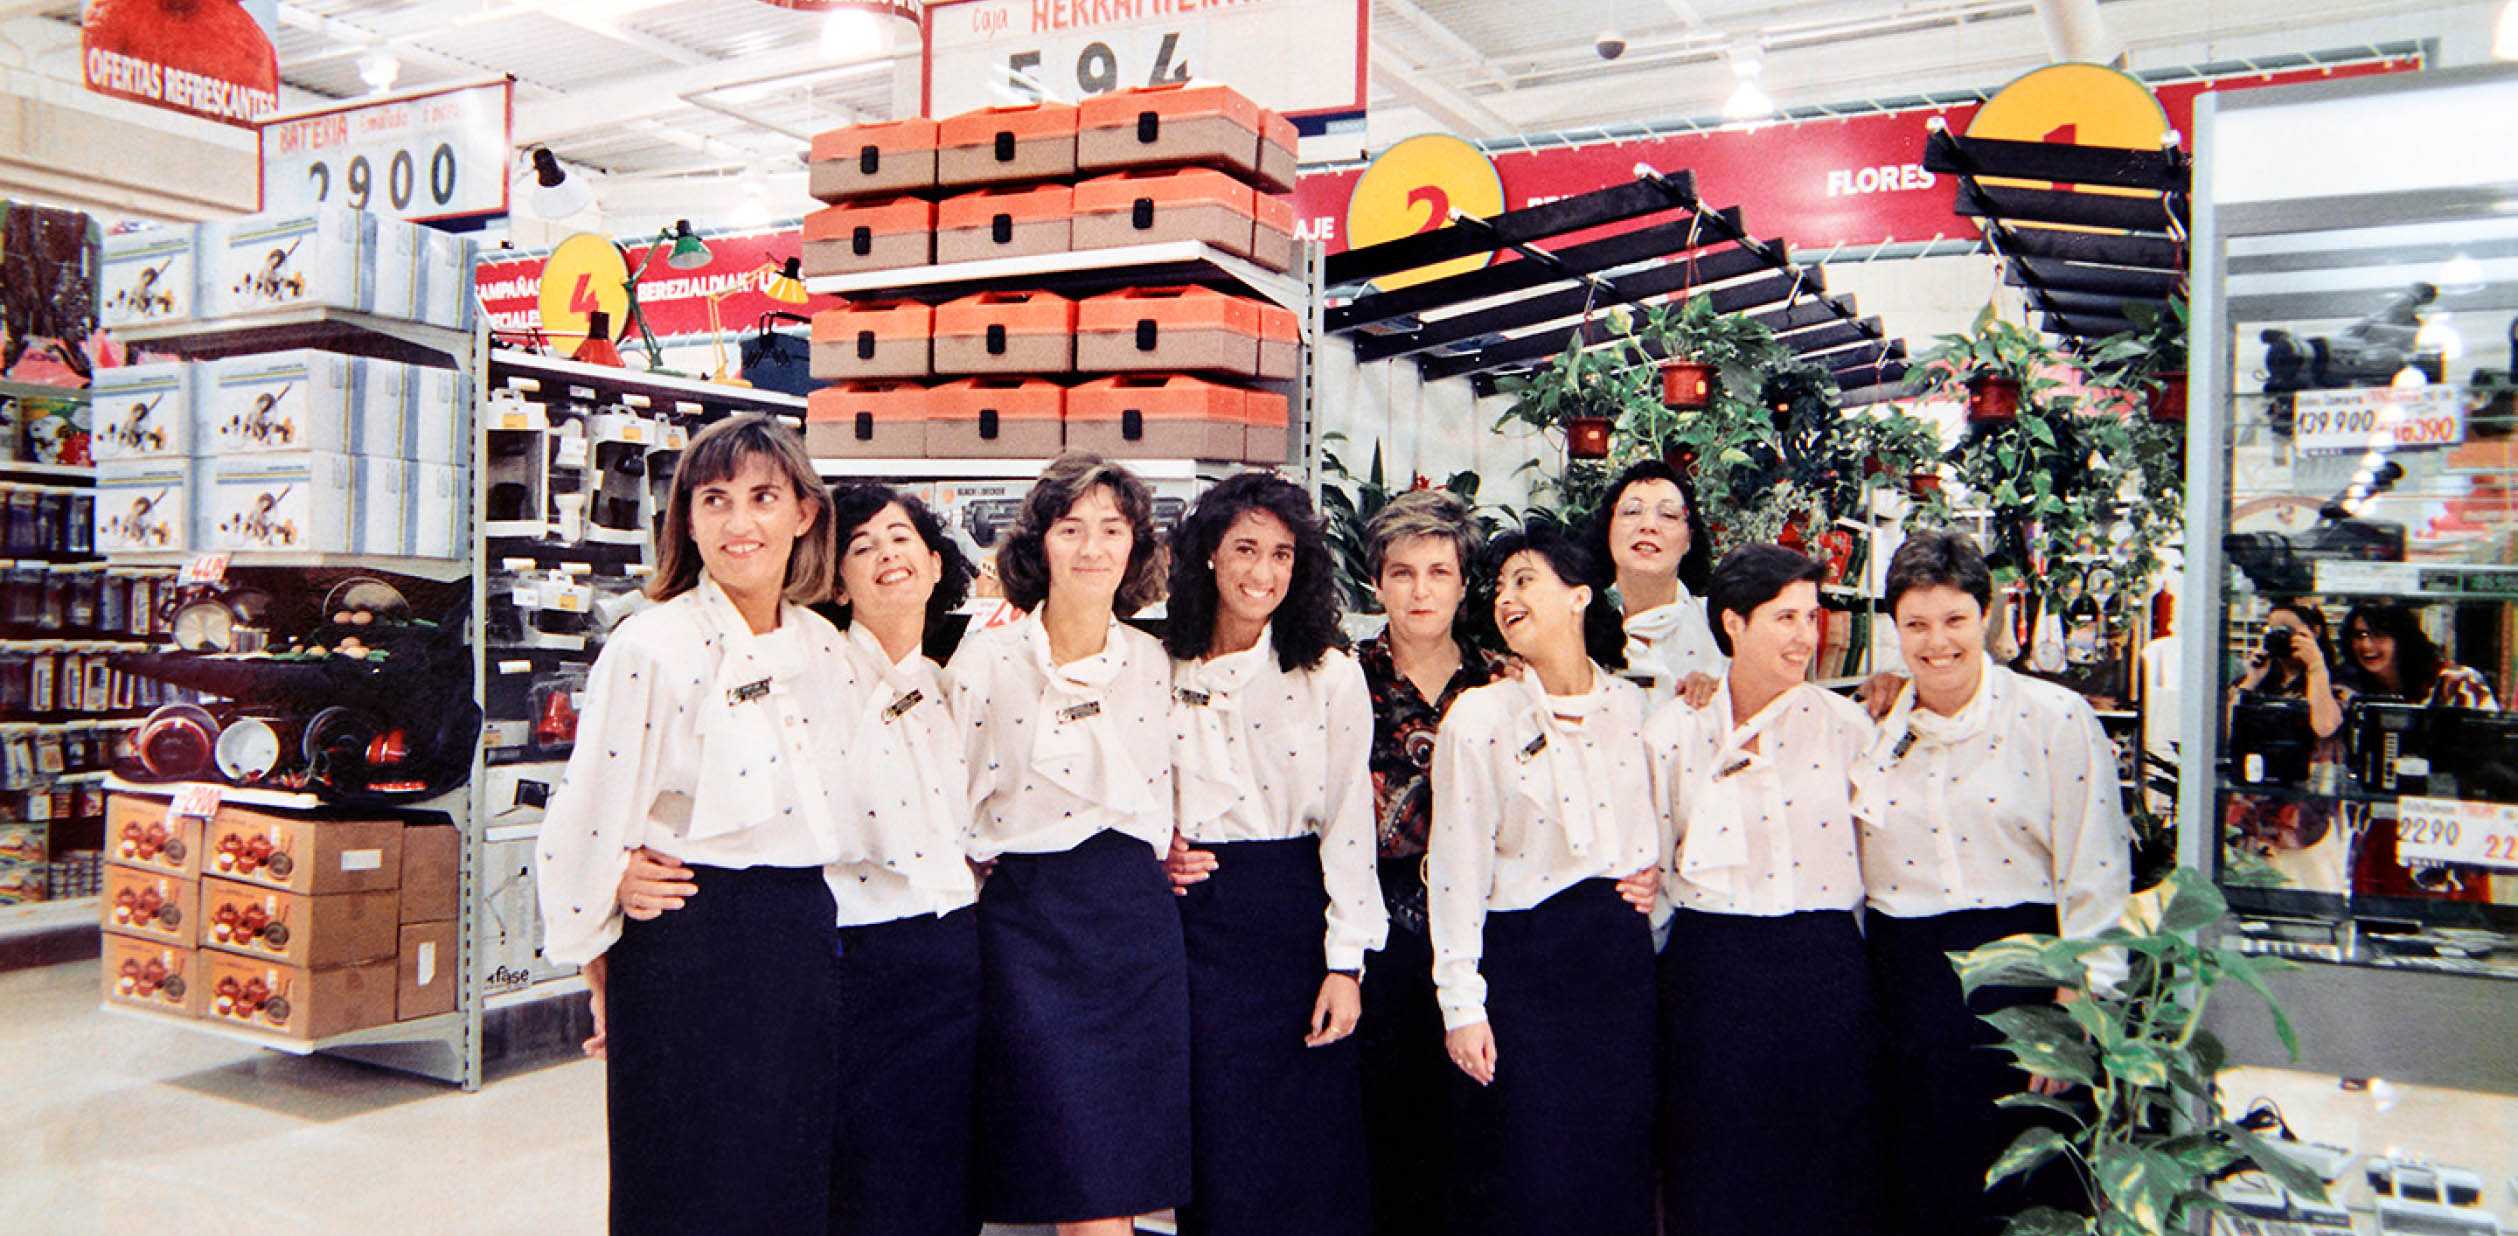 Grupo Eroski employees at supermarket opening